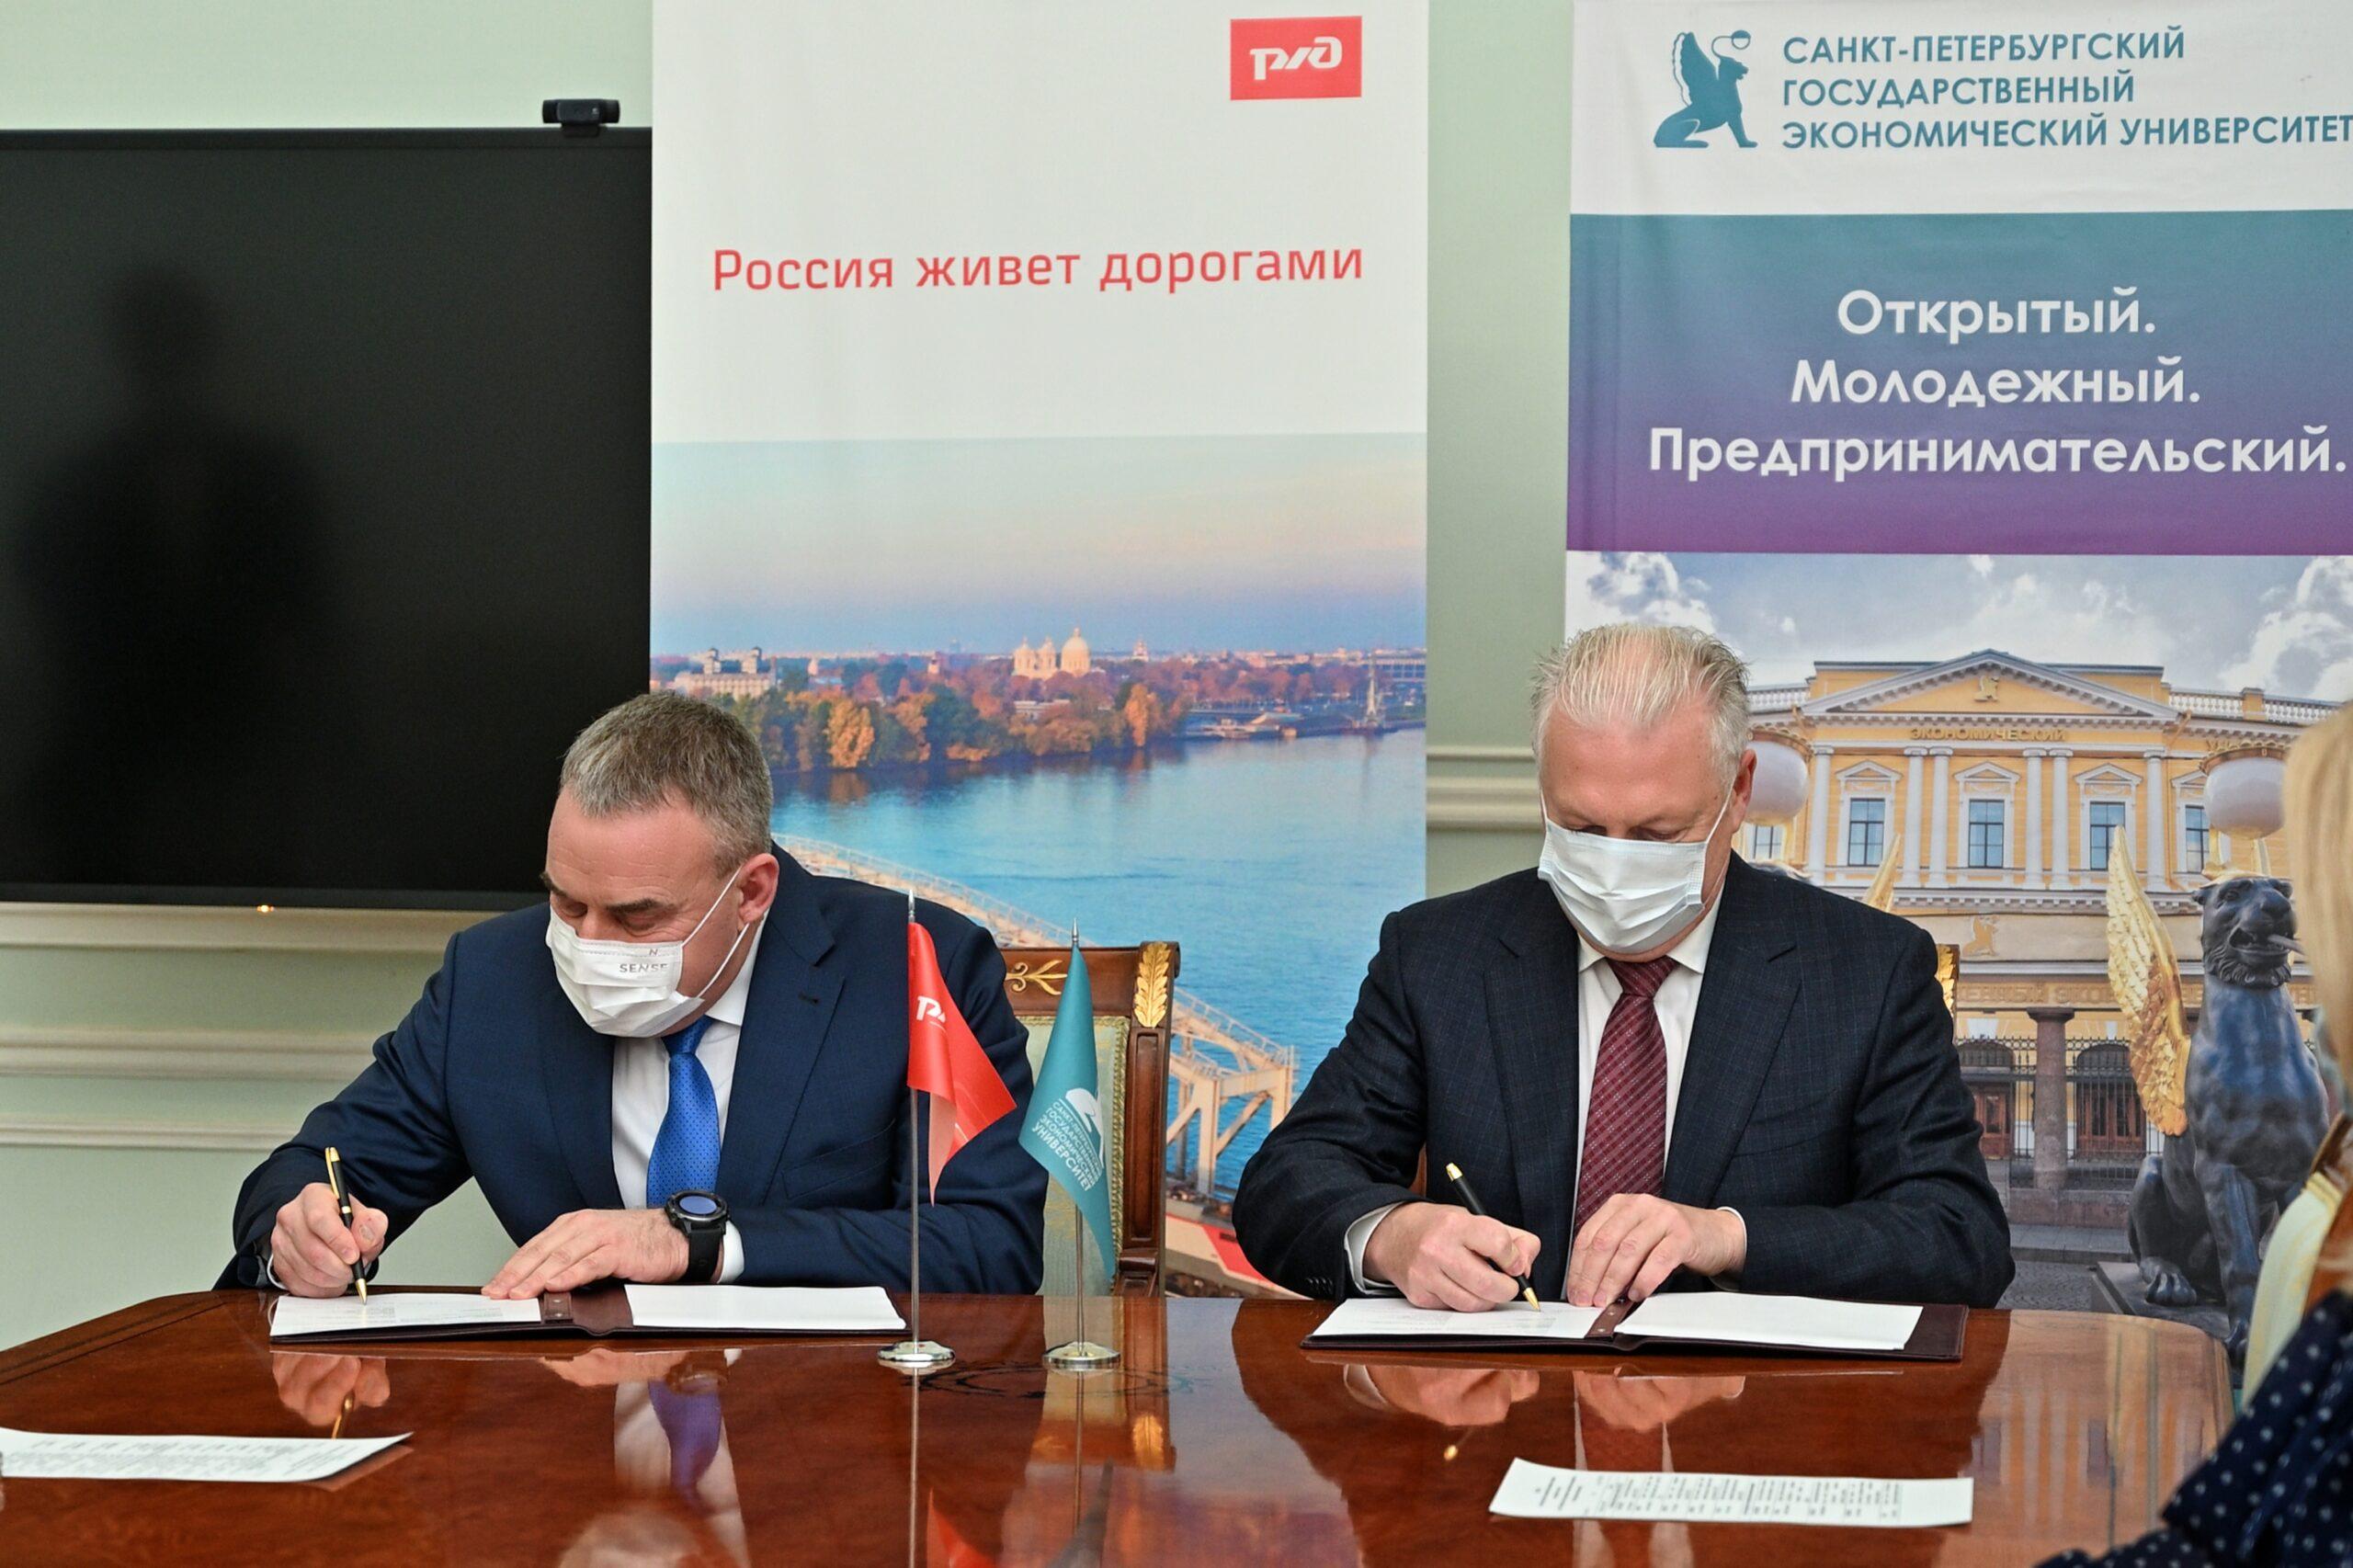 Октябрьская железная дорога и СПбГЭУ подписали соглашение о сотрудничестве